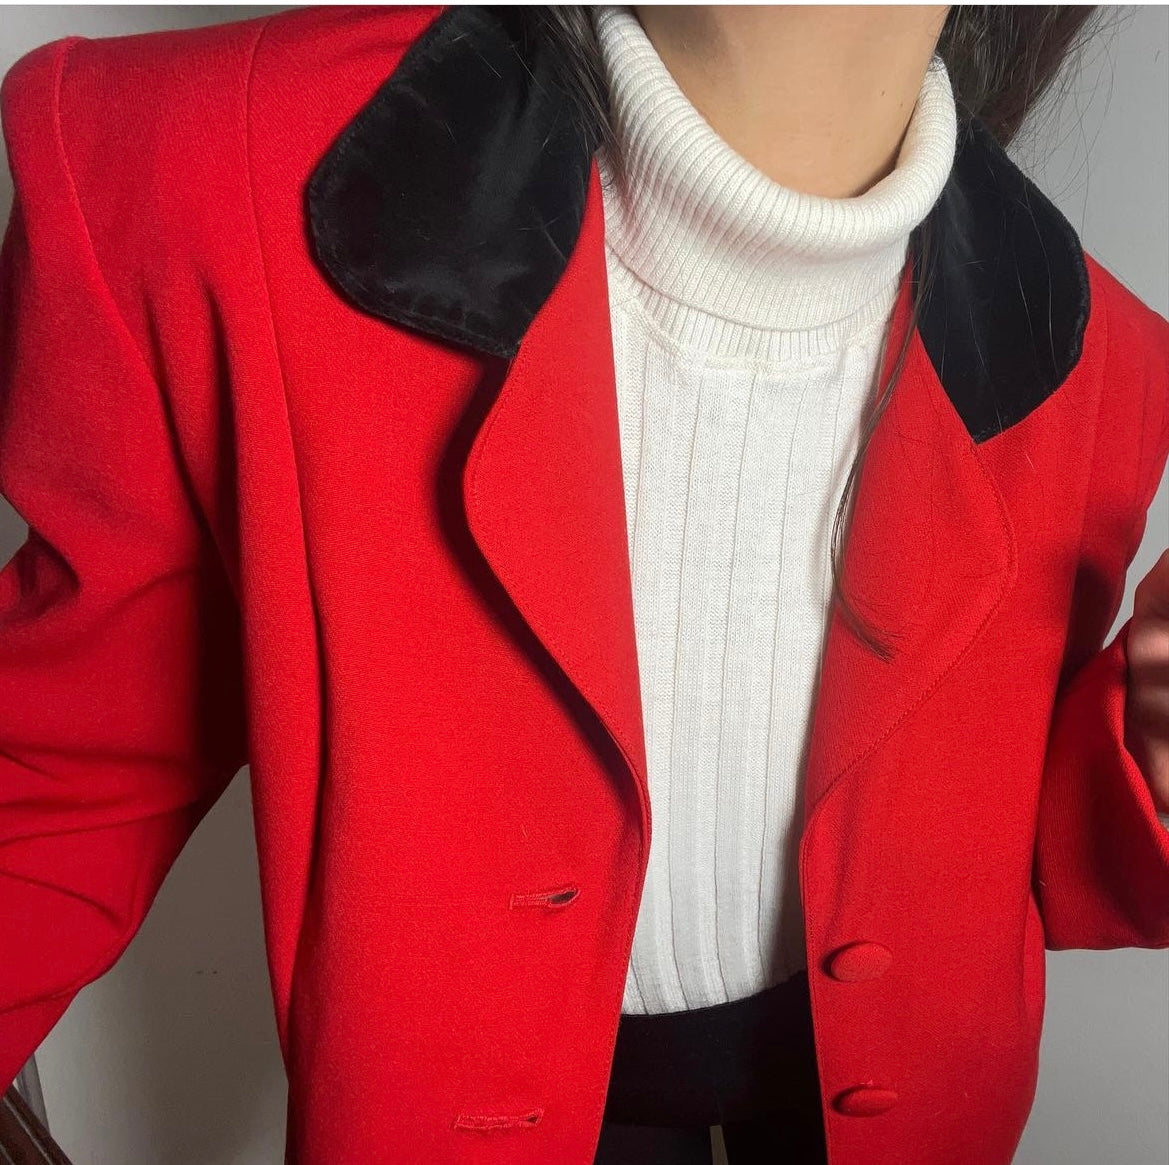 90s bright red button up black velvet collared blazer .Fits best S